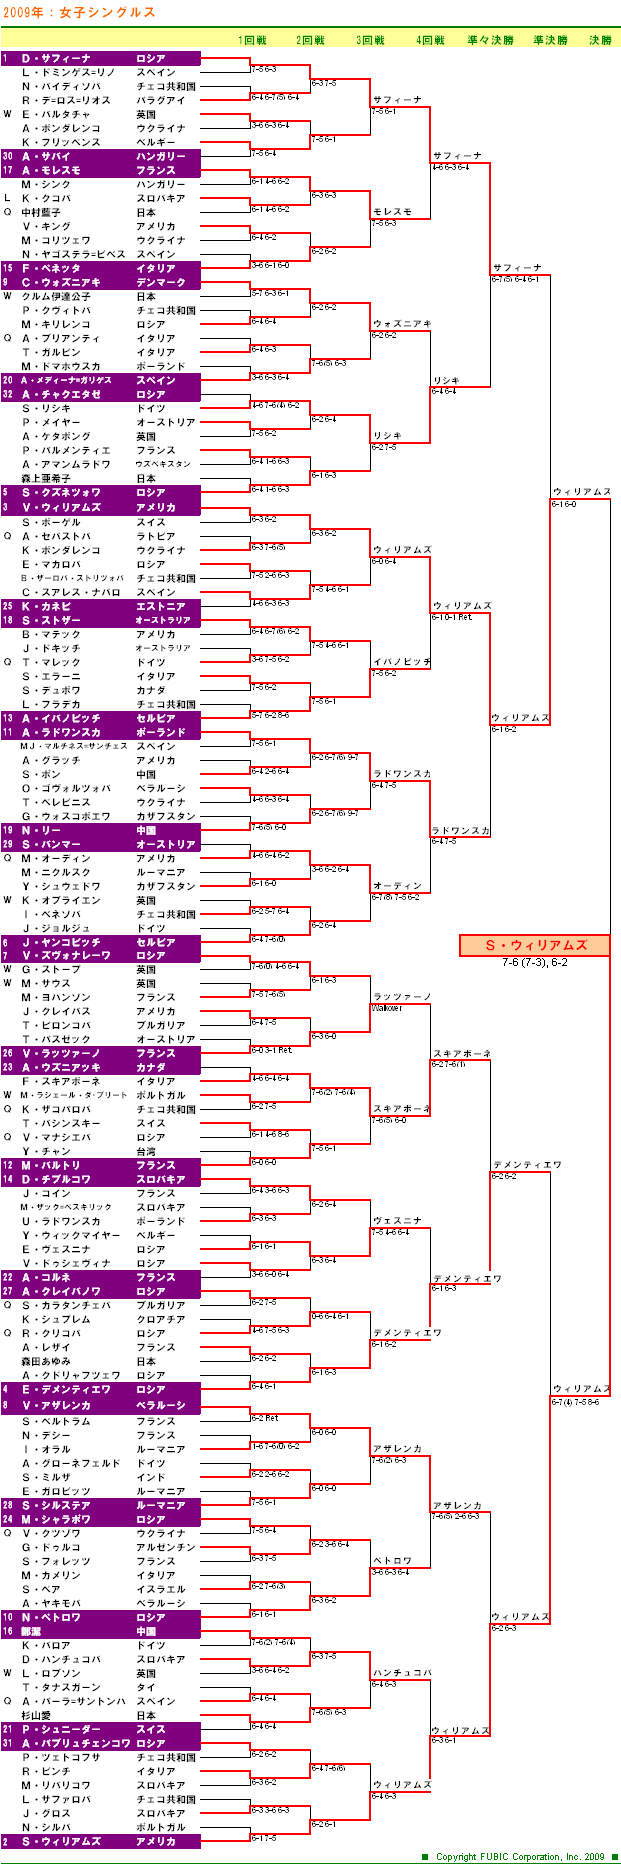 ウィンブルドンテニス2009　女子ダブルスドロー表